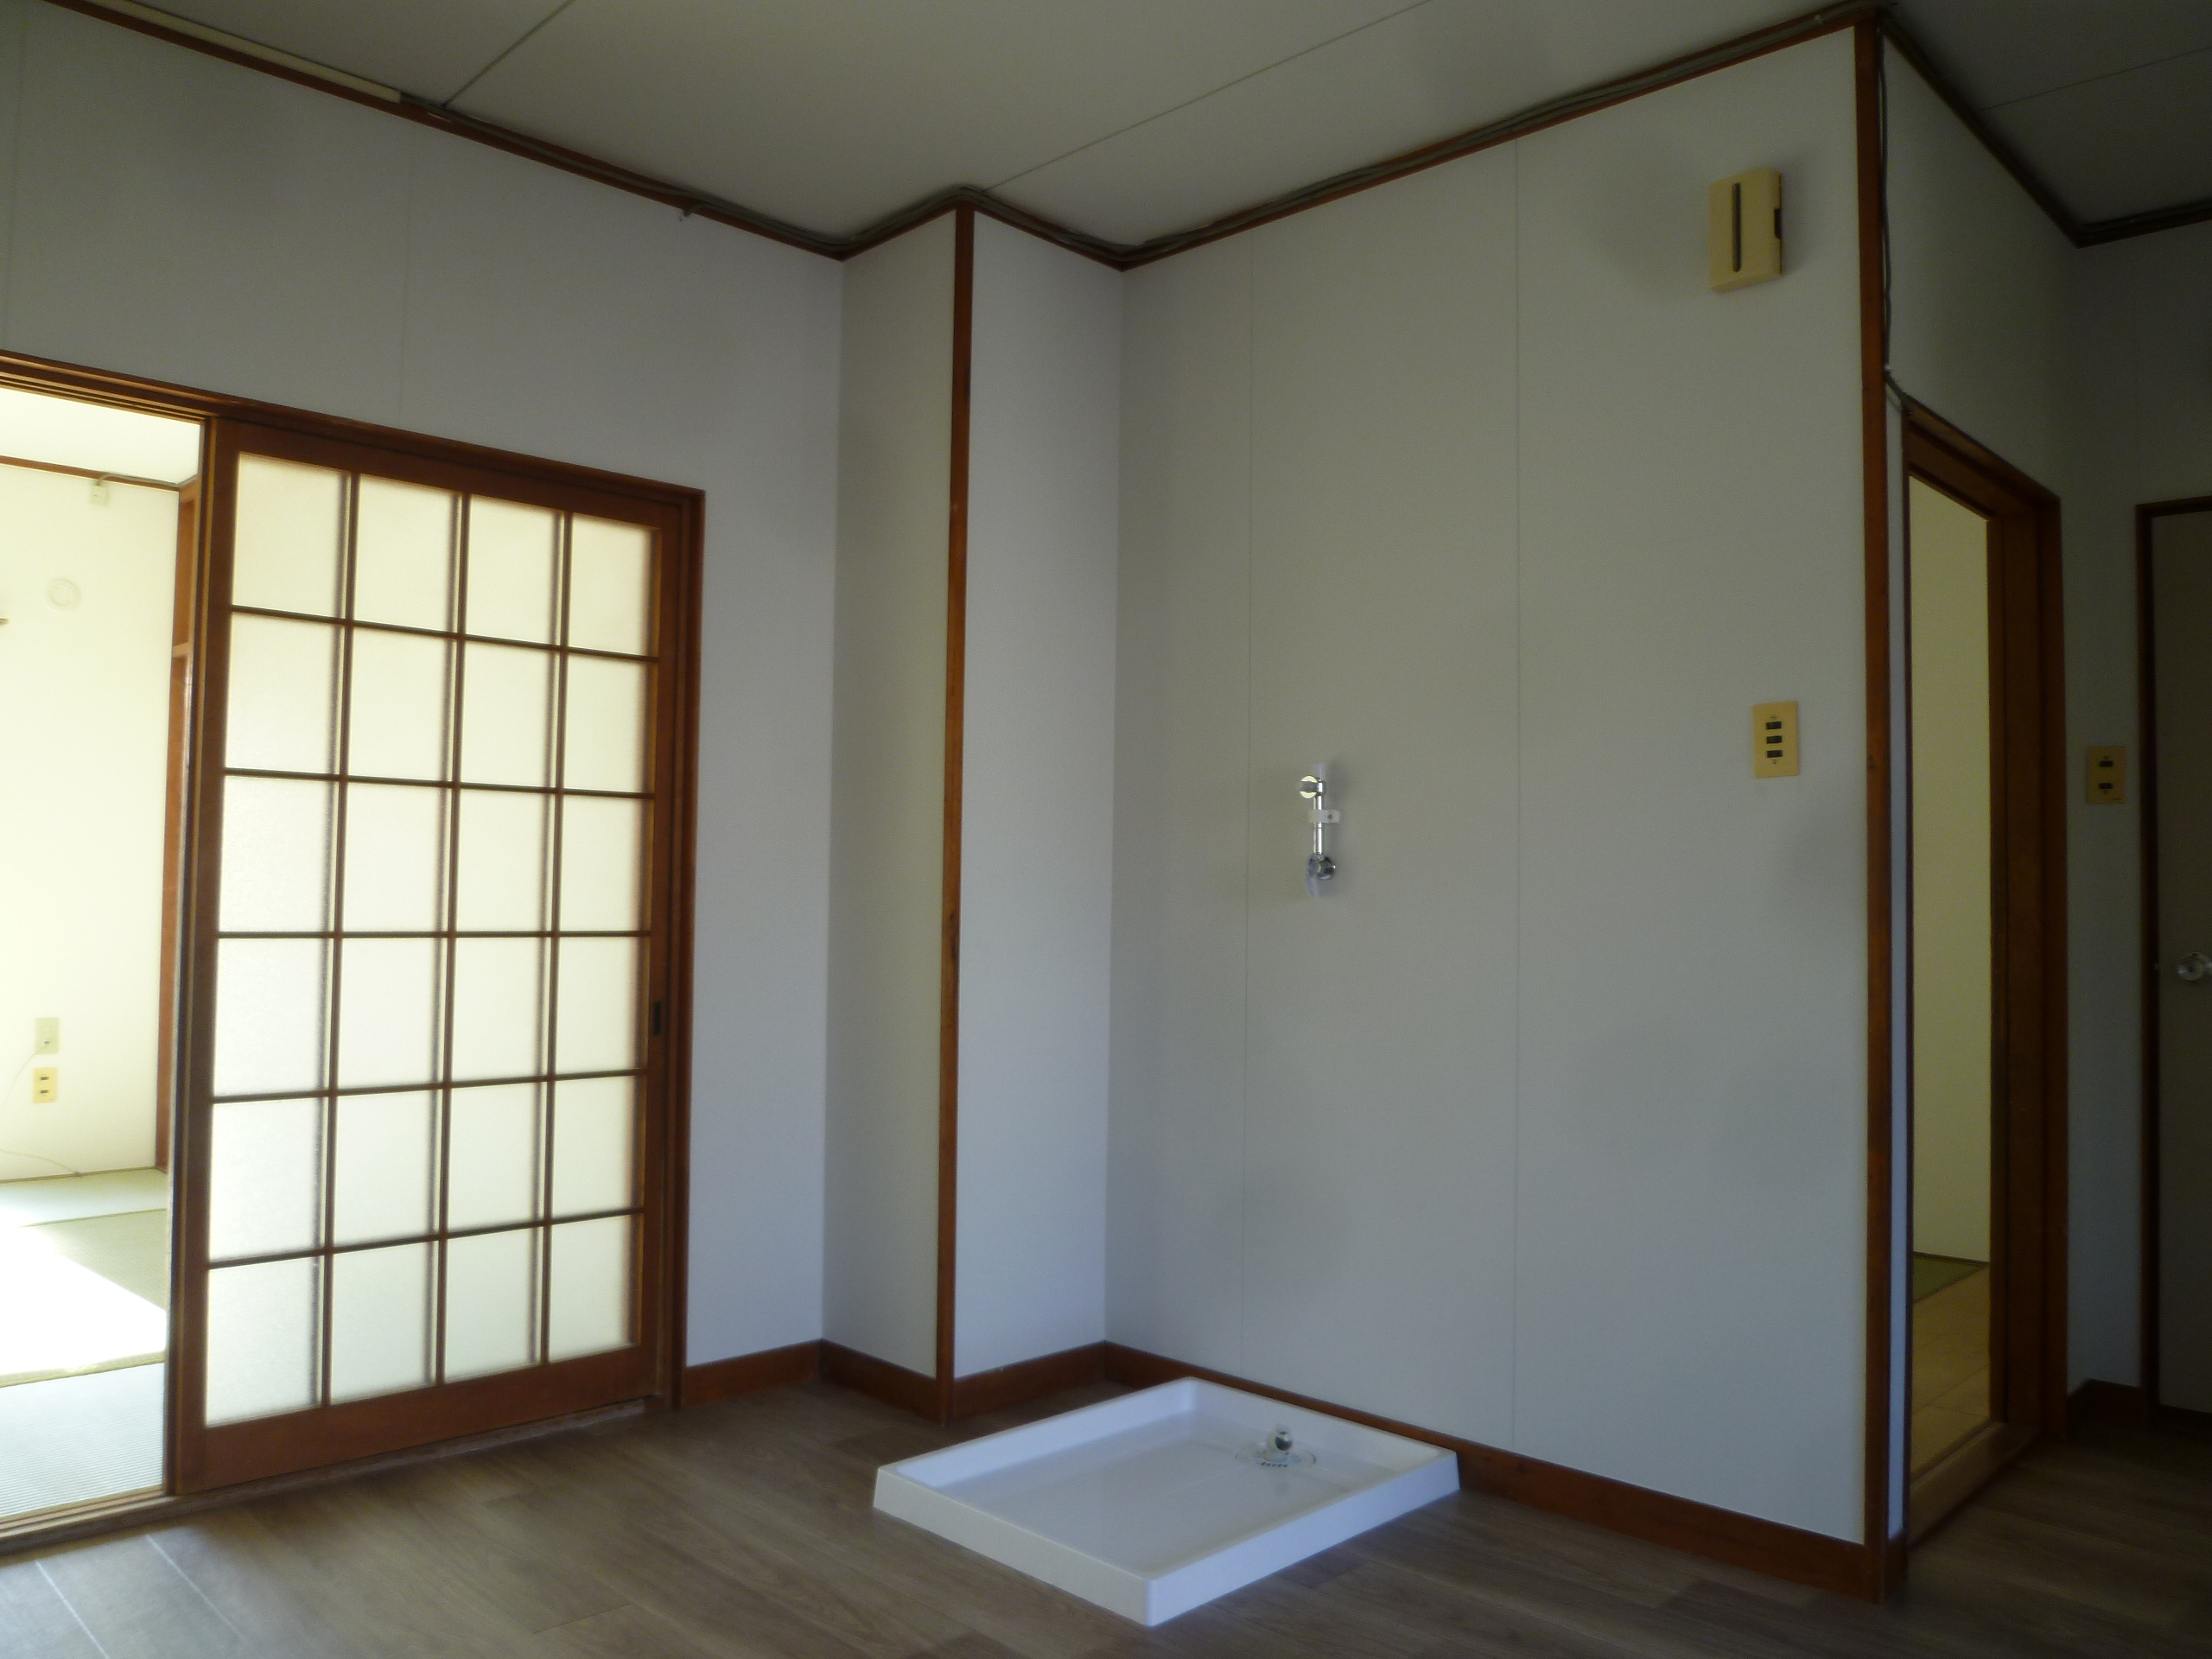 【DK内 AFTER】
パッと見て「キレイな部屋だな」という印象を与えることにより、入居者に選ばれる部屋になります。